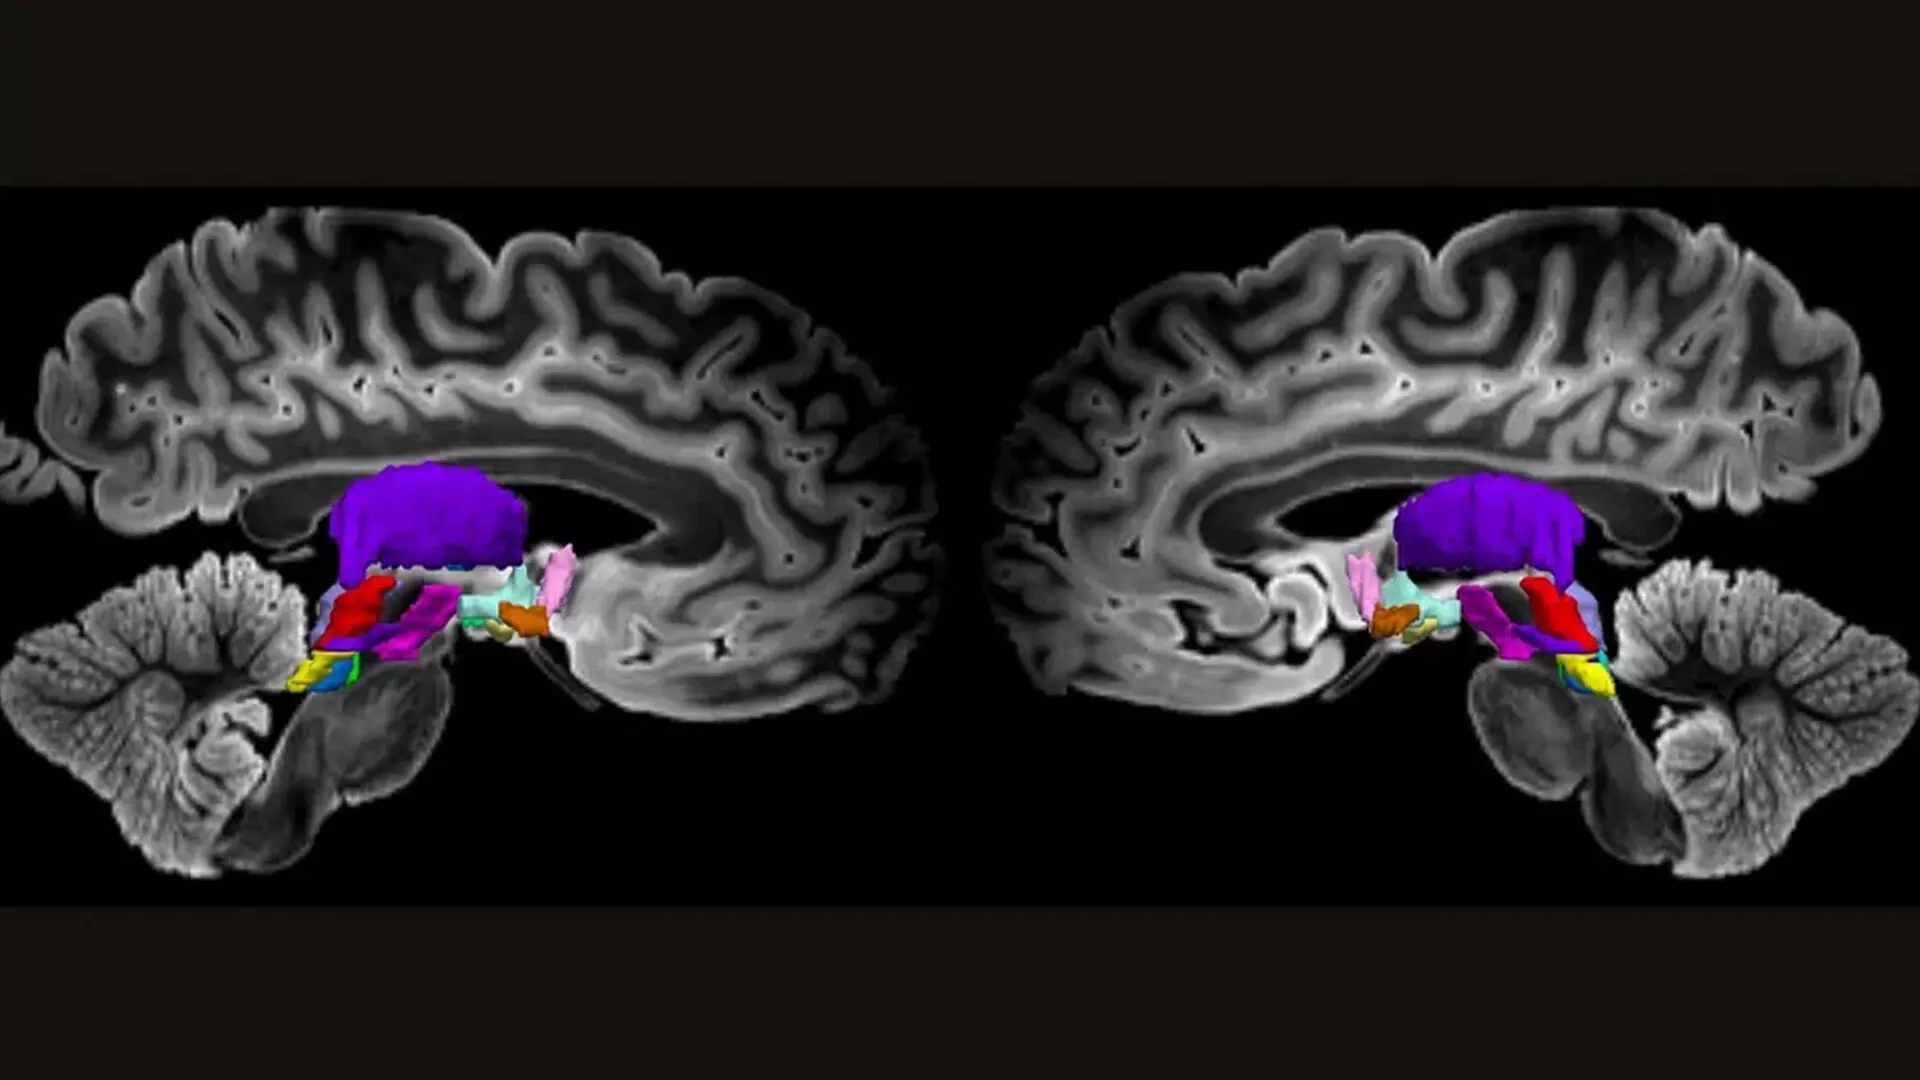 मस्तिष्क कोशिकाओं का अति-विस्तृत मानचित्र जो चेतना की हमारी समझ में कर सकता है सुधार